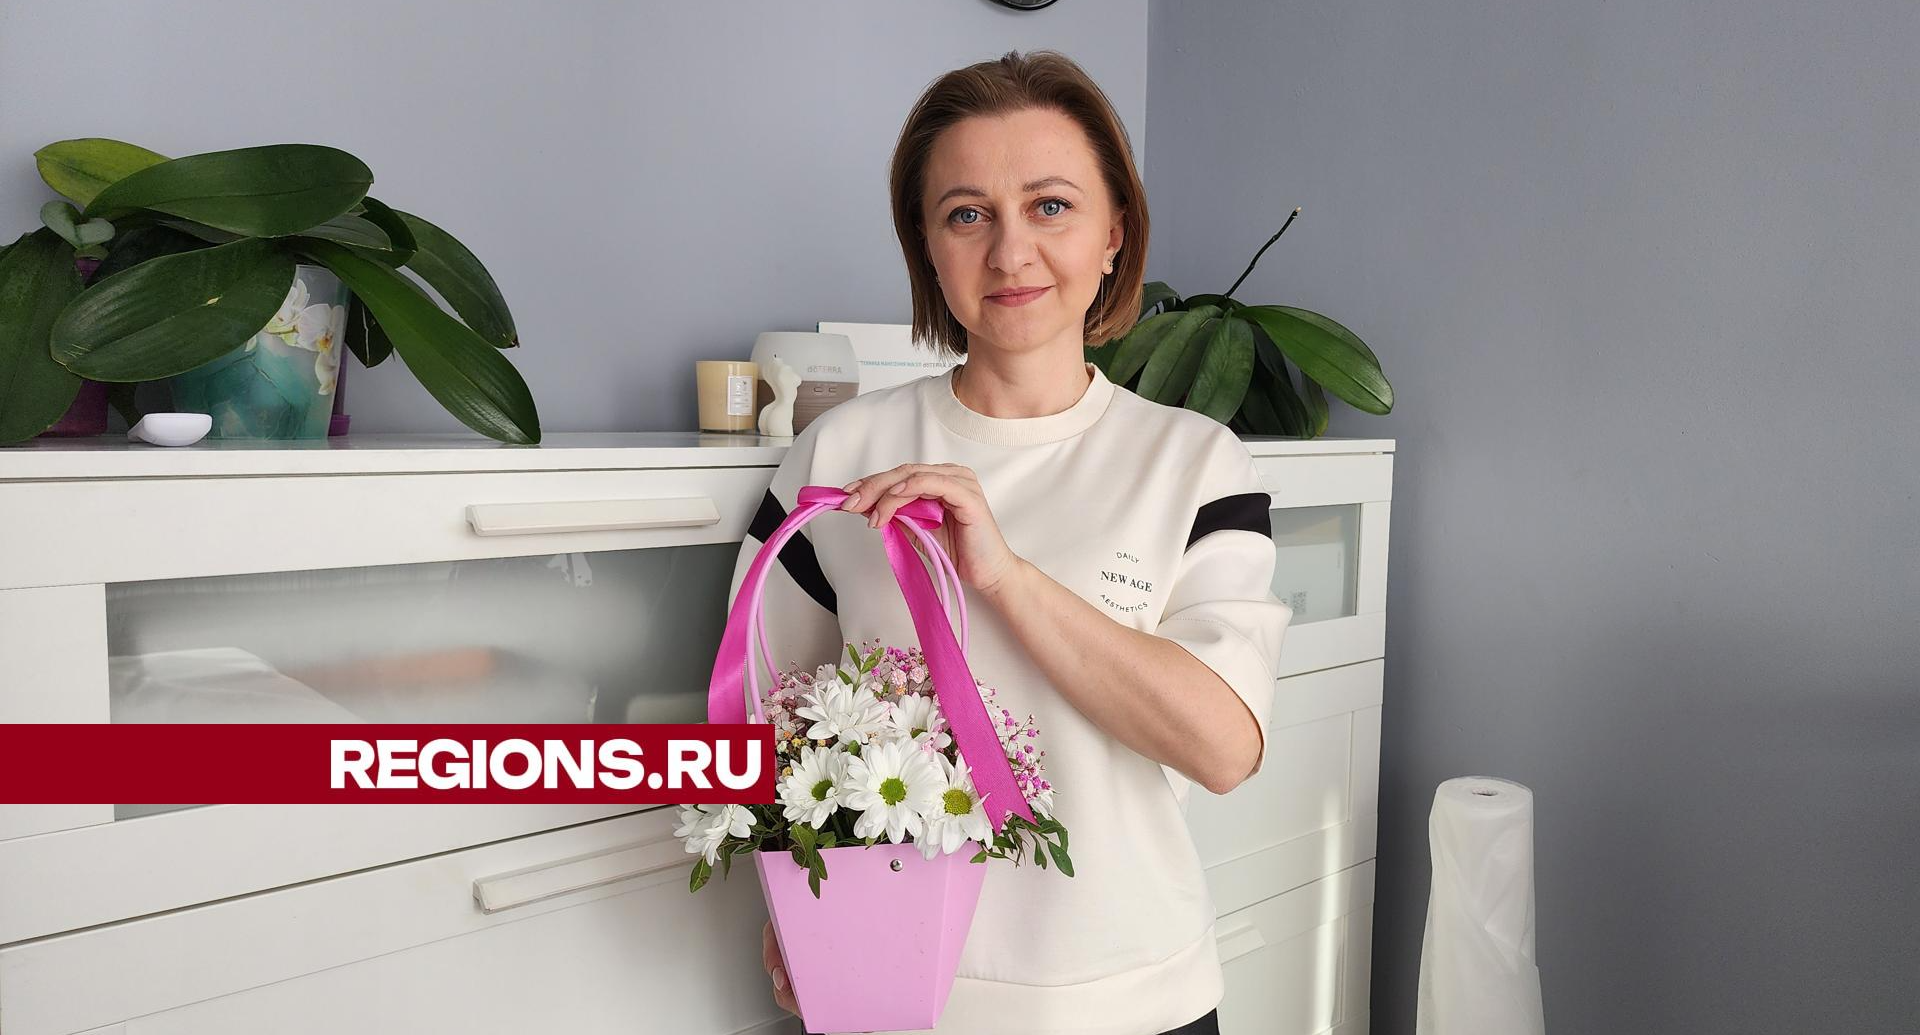 Жительница Егорьевска рассказала, как она празднует день рождения 29 февраля